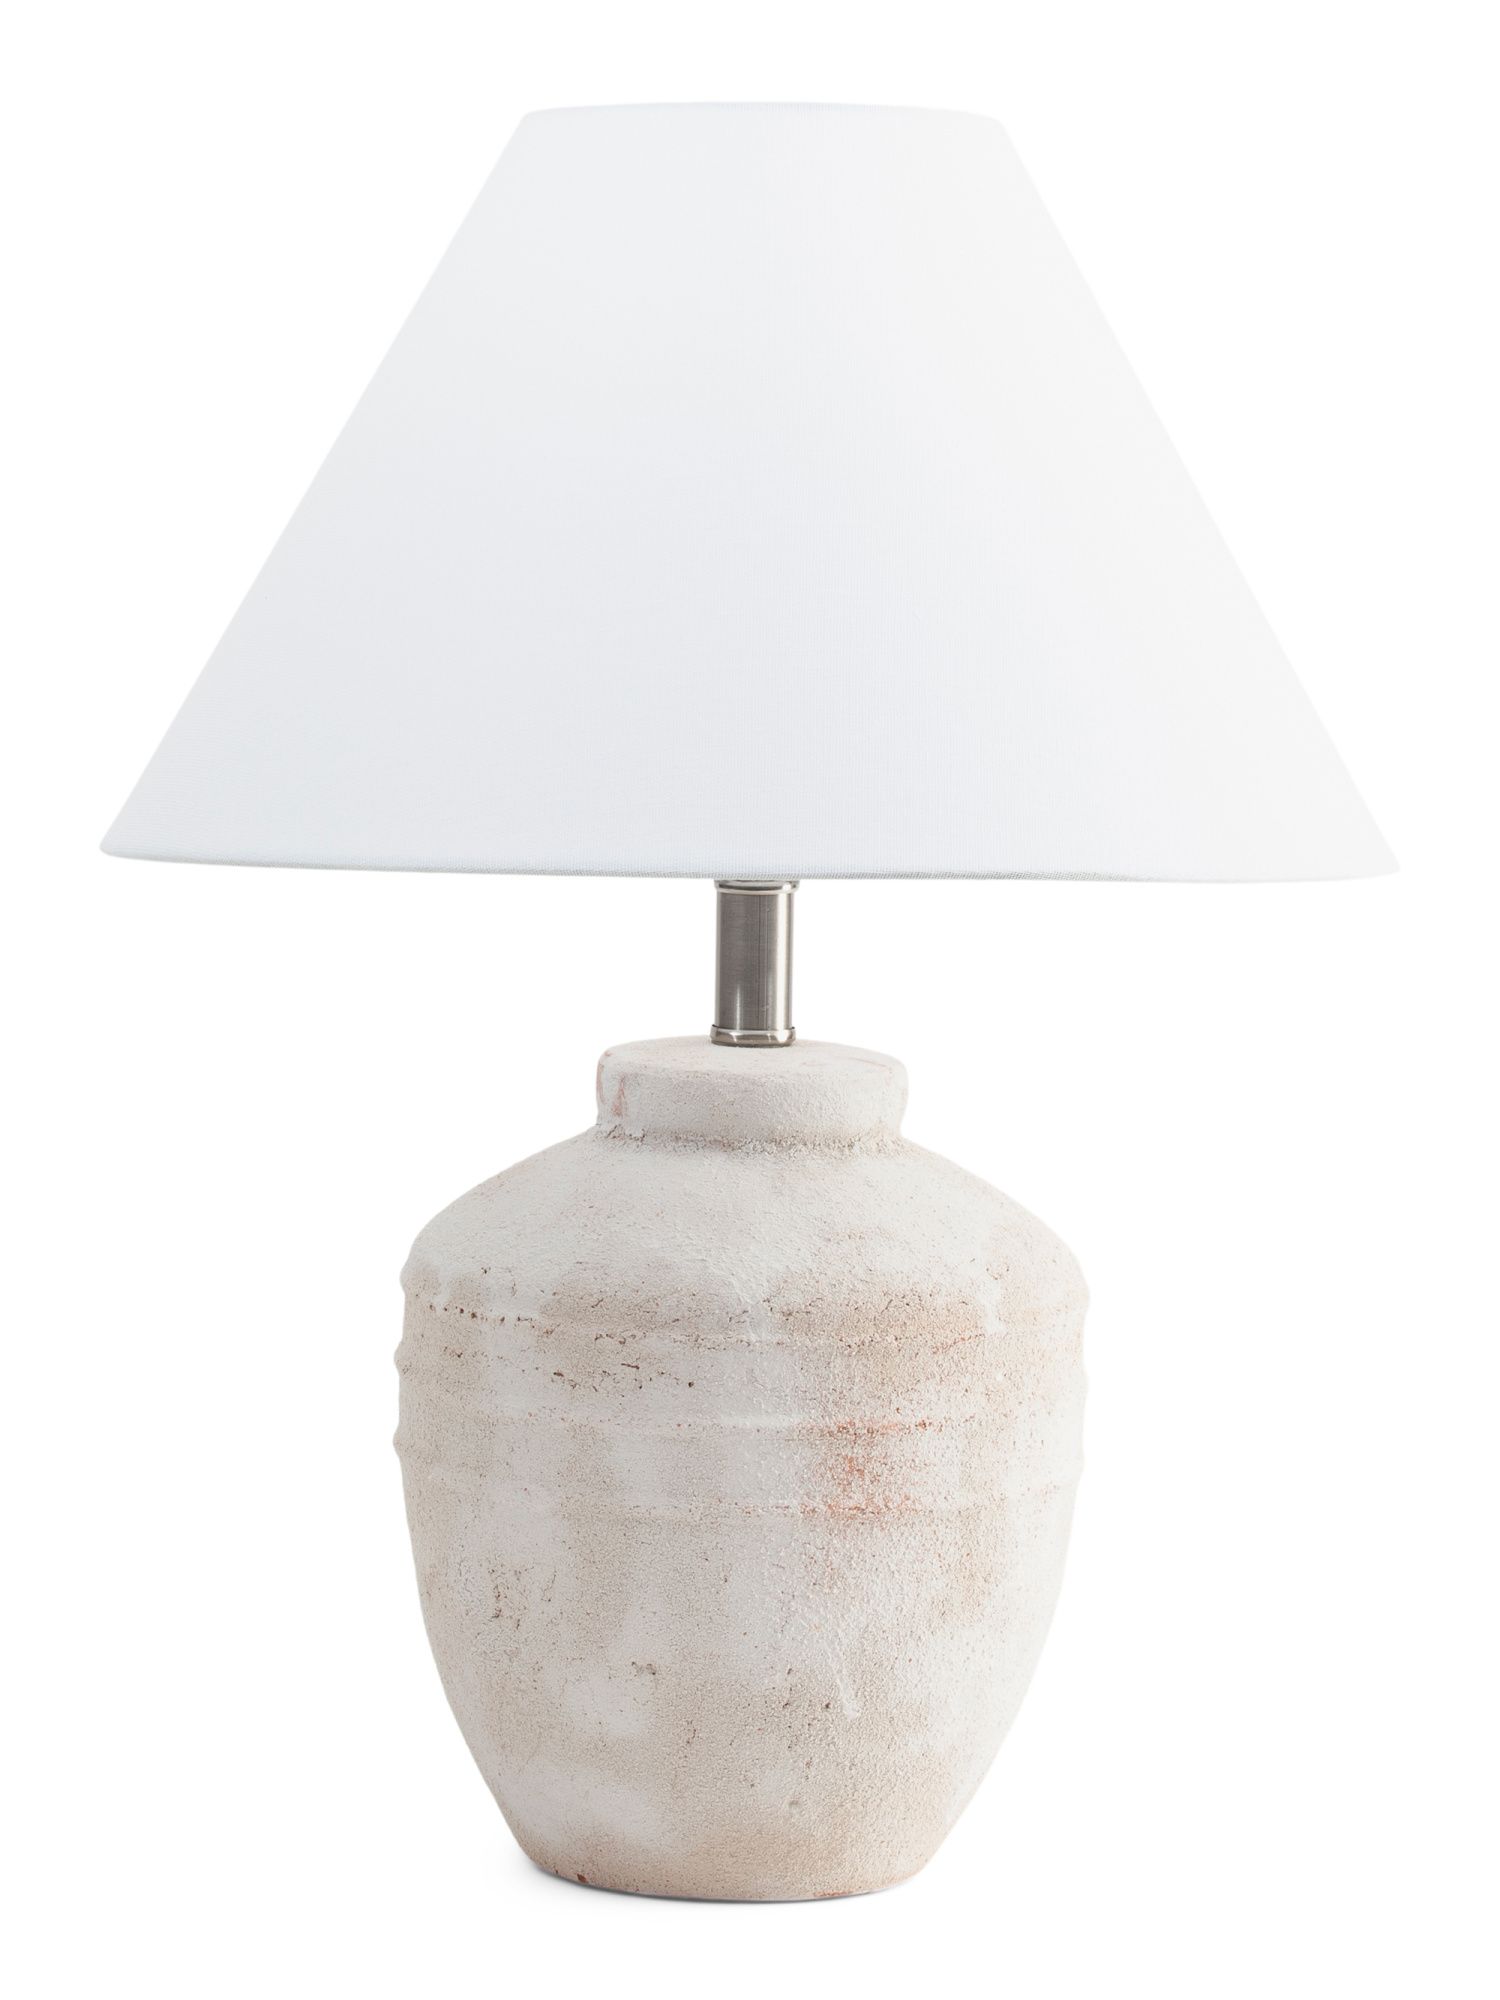 19in Terracotta Pot Lamp | TJ Maxx